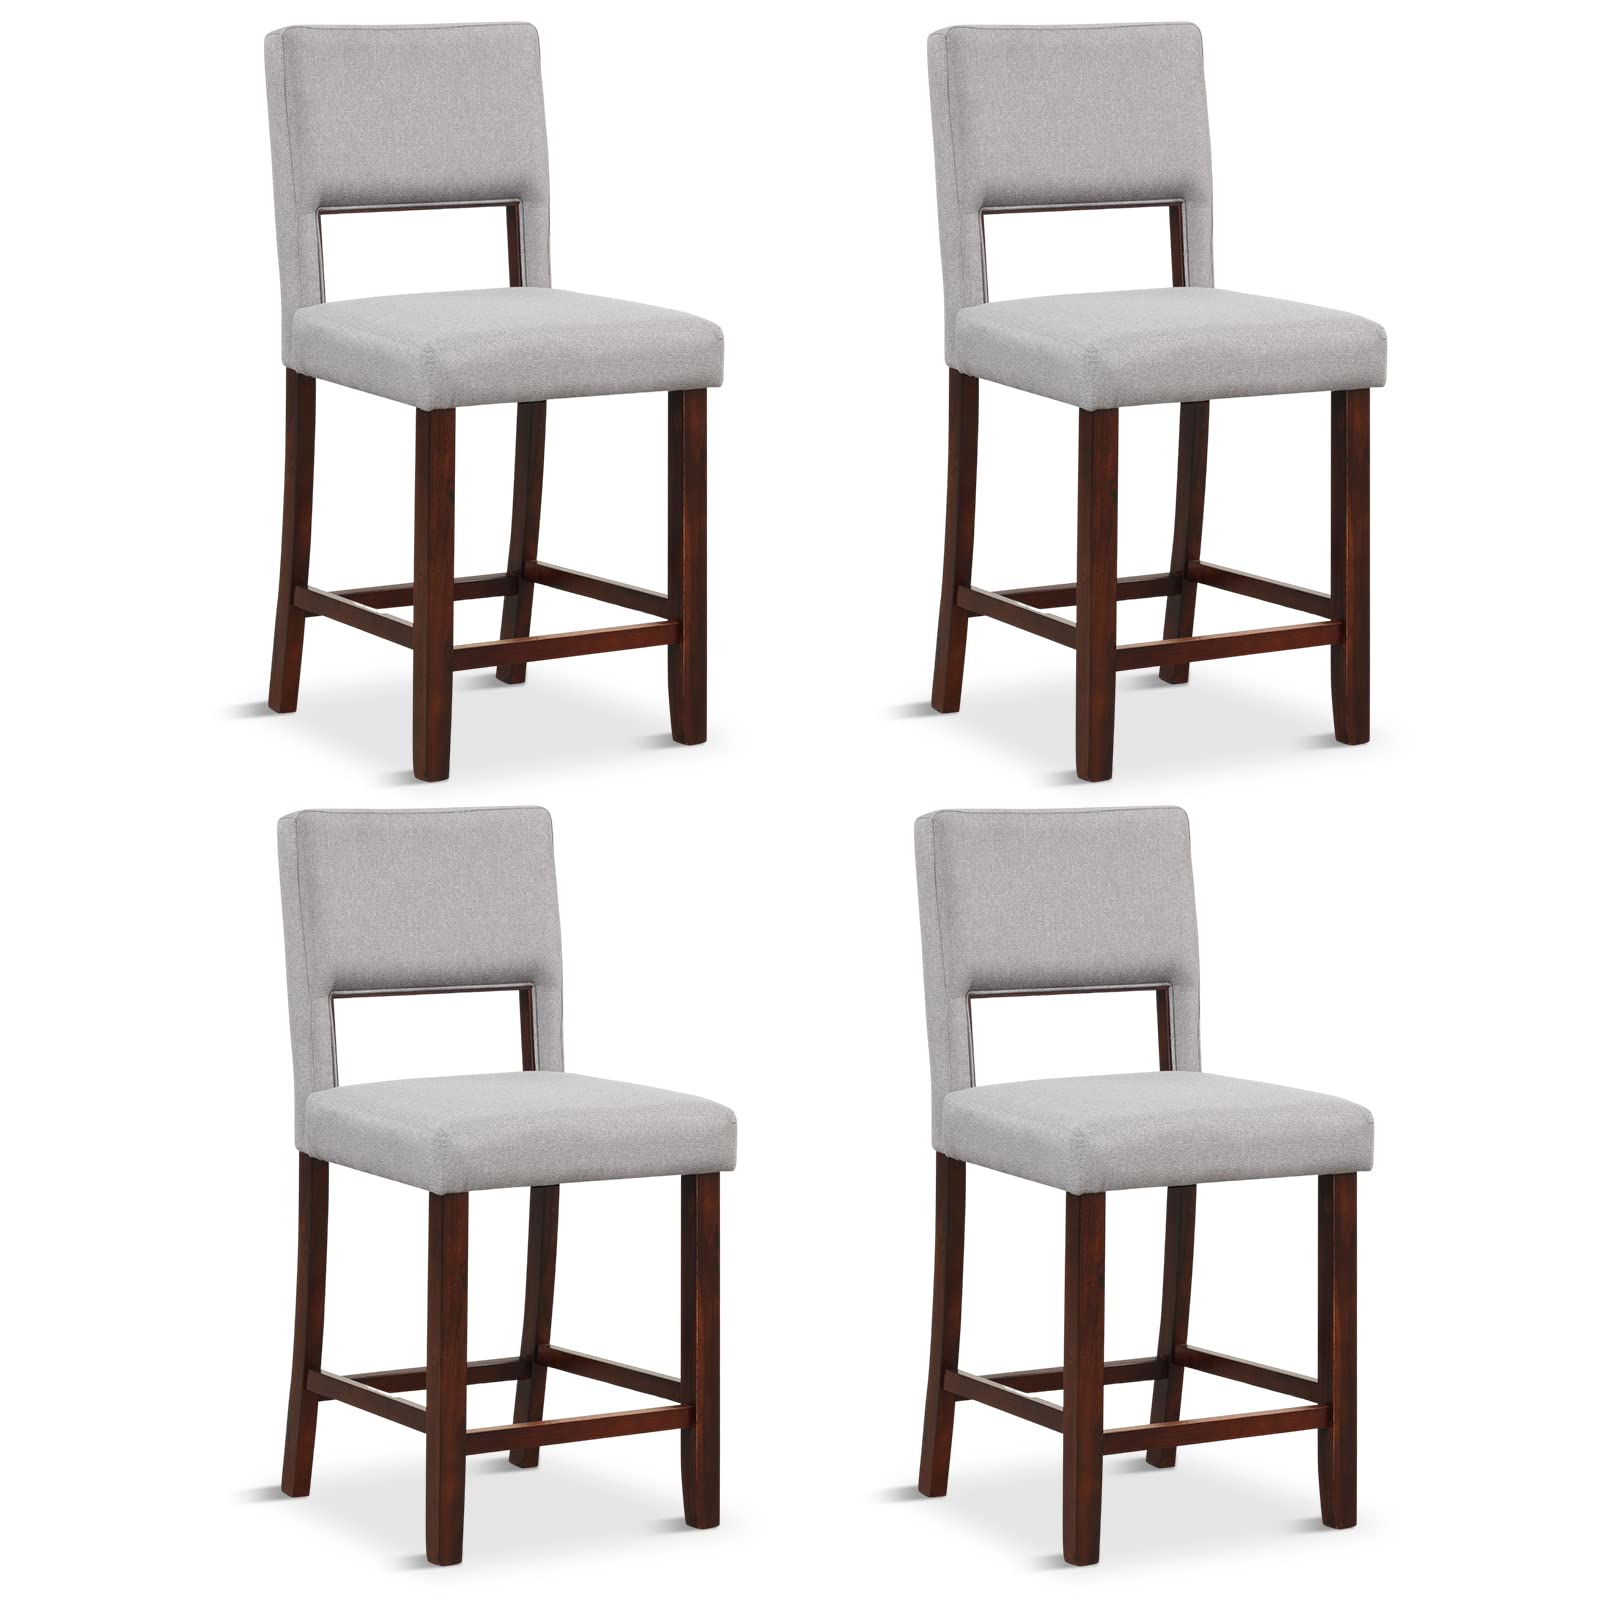 Giantex 4-Piece Bar Chair Set - Linen Counter Height Bar Stool Set with Hollowed Back & Rubber Wood Legs